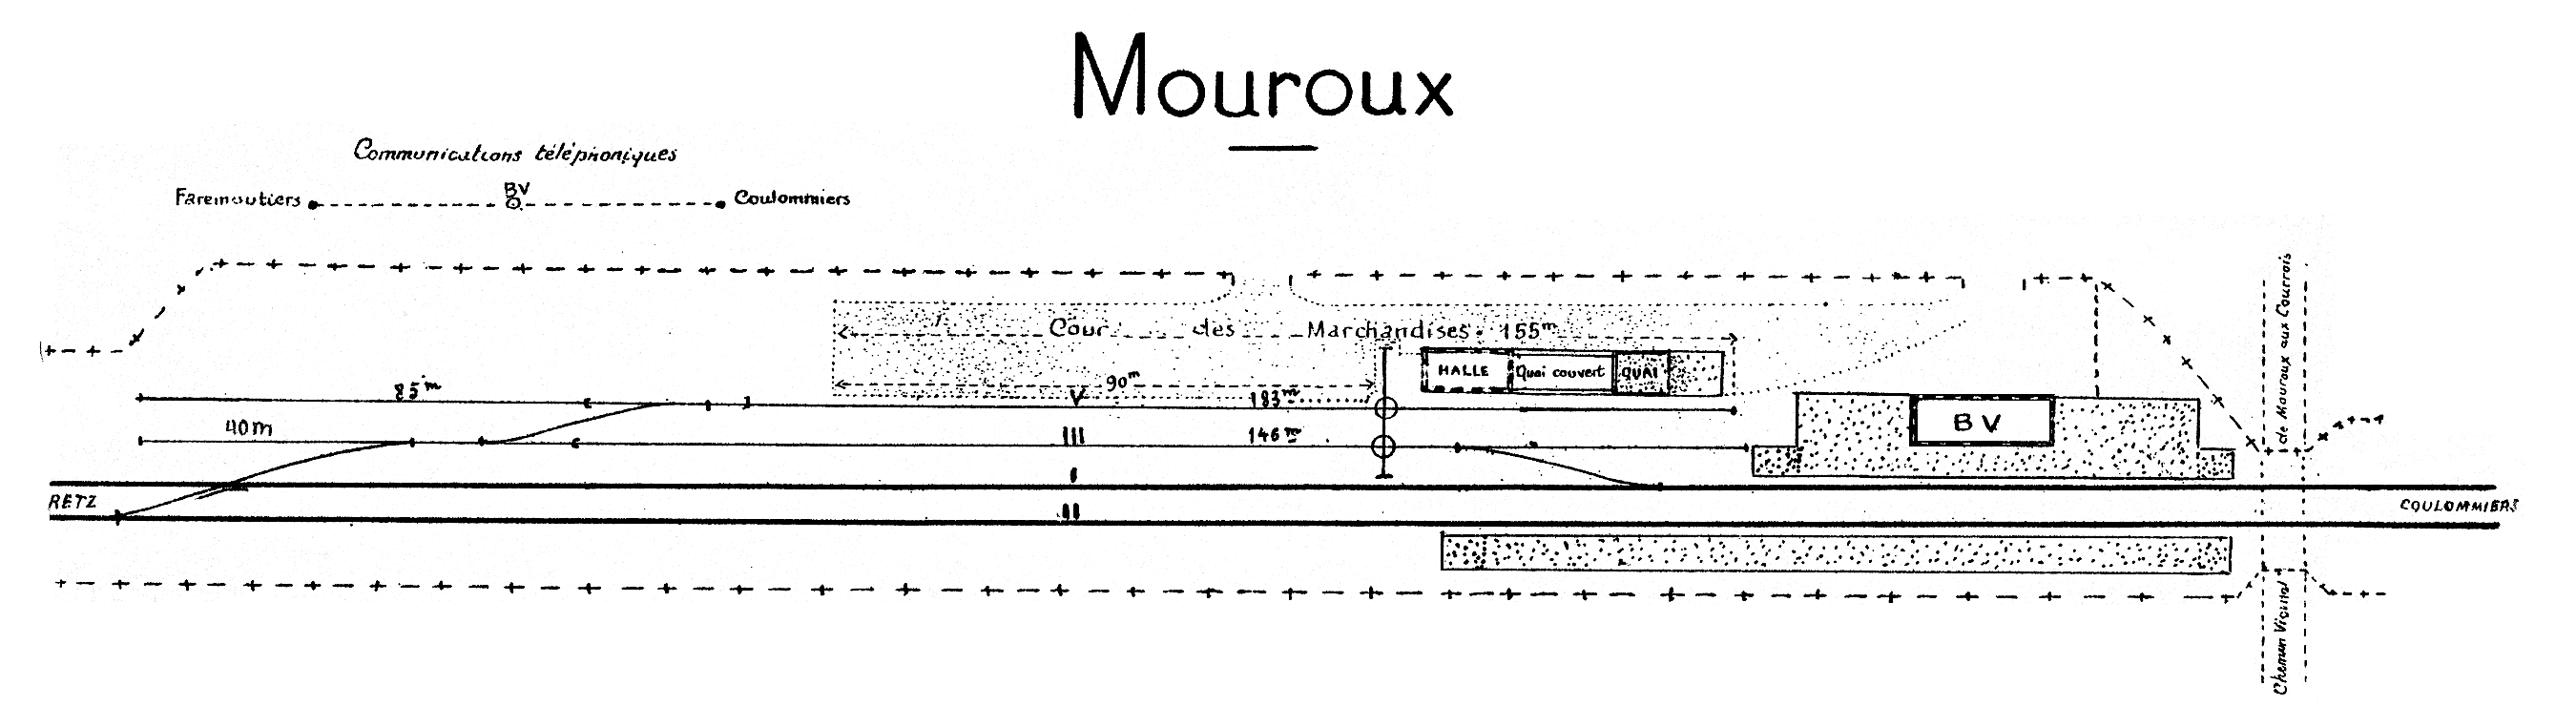 CHEMINS DE FER DE L'EST • CROQUIS DES GARES • MOUROUX (1925)